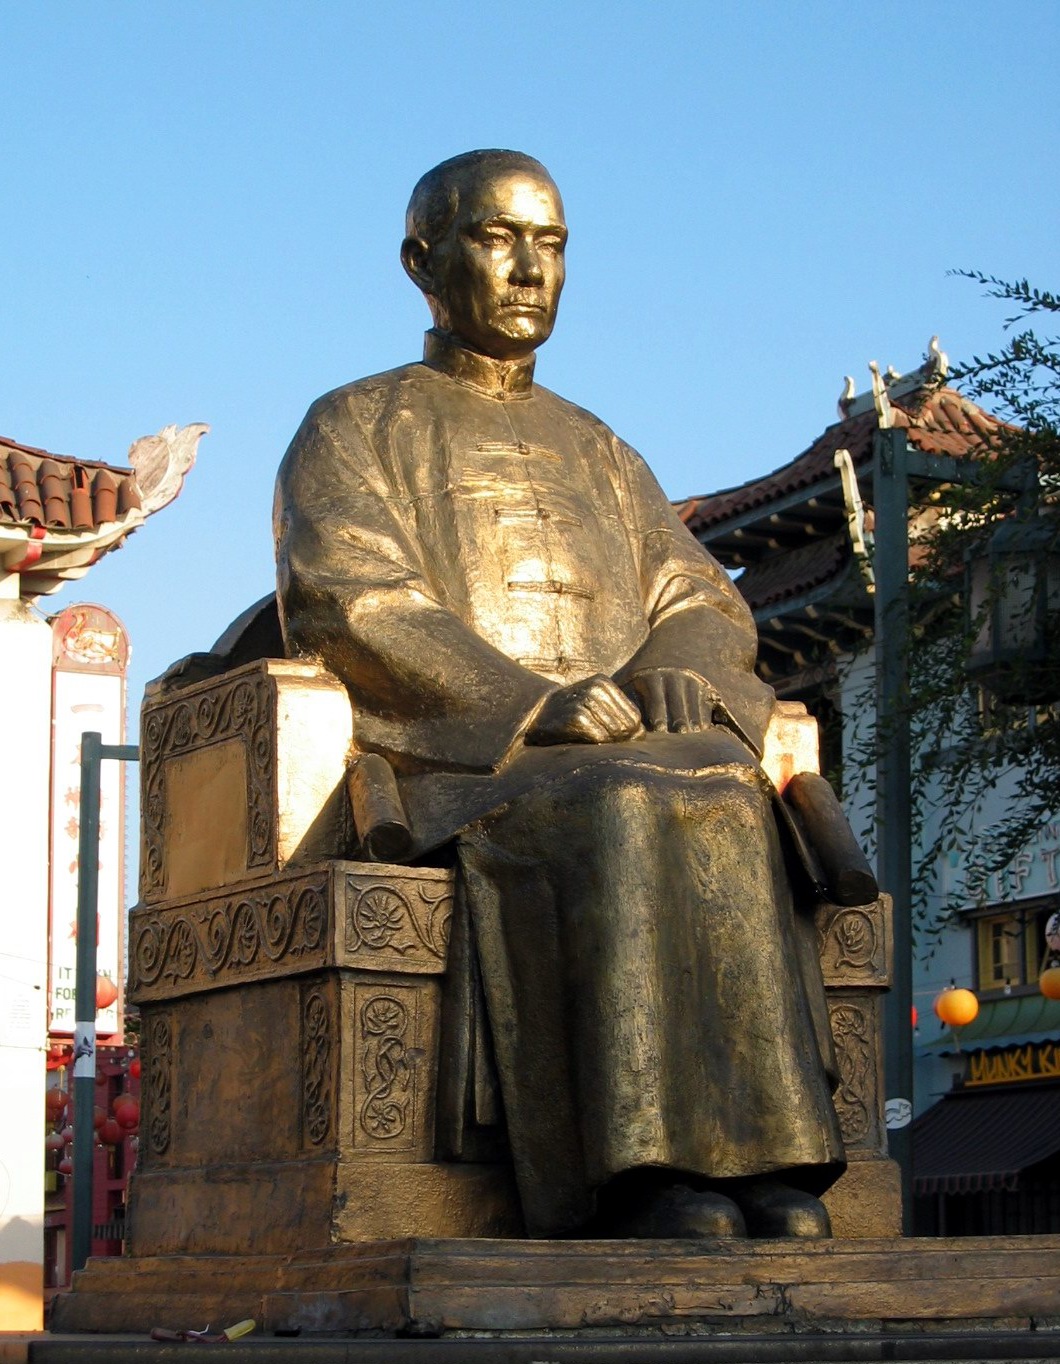 Sun Yat-sen - Wikipedia